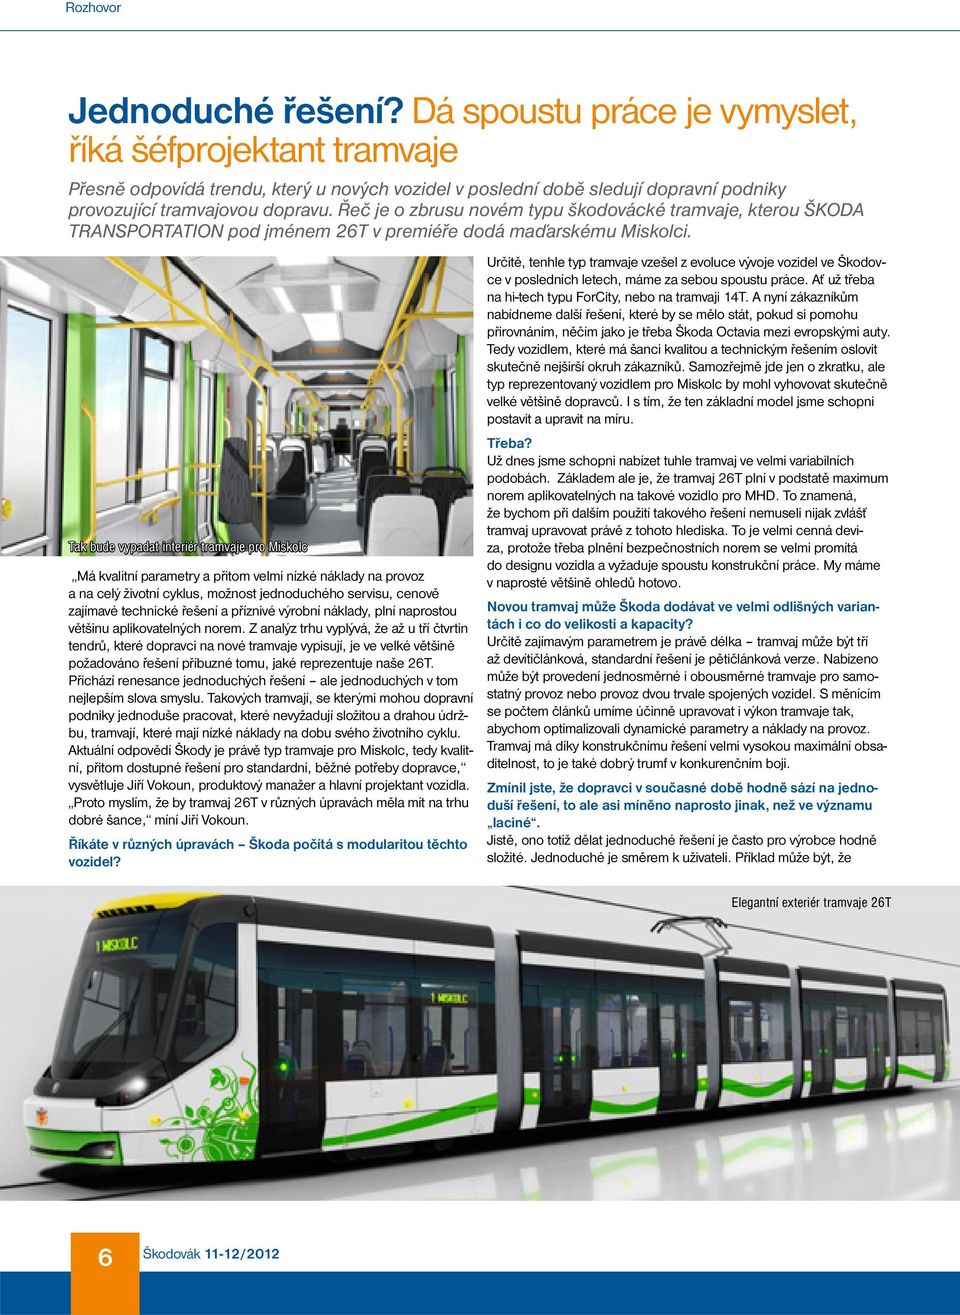 Řeč je o zbrusu novém typu škodovácké tramvaje, kterou ŠKODA TRANSPORTATION pod jménem 26T v premiéře dodá maďarskému Miskolci.